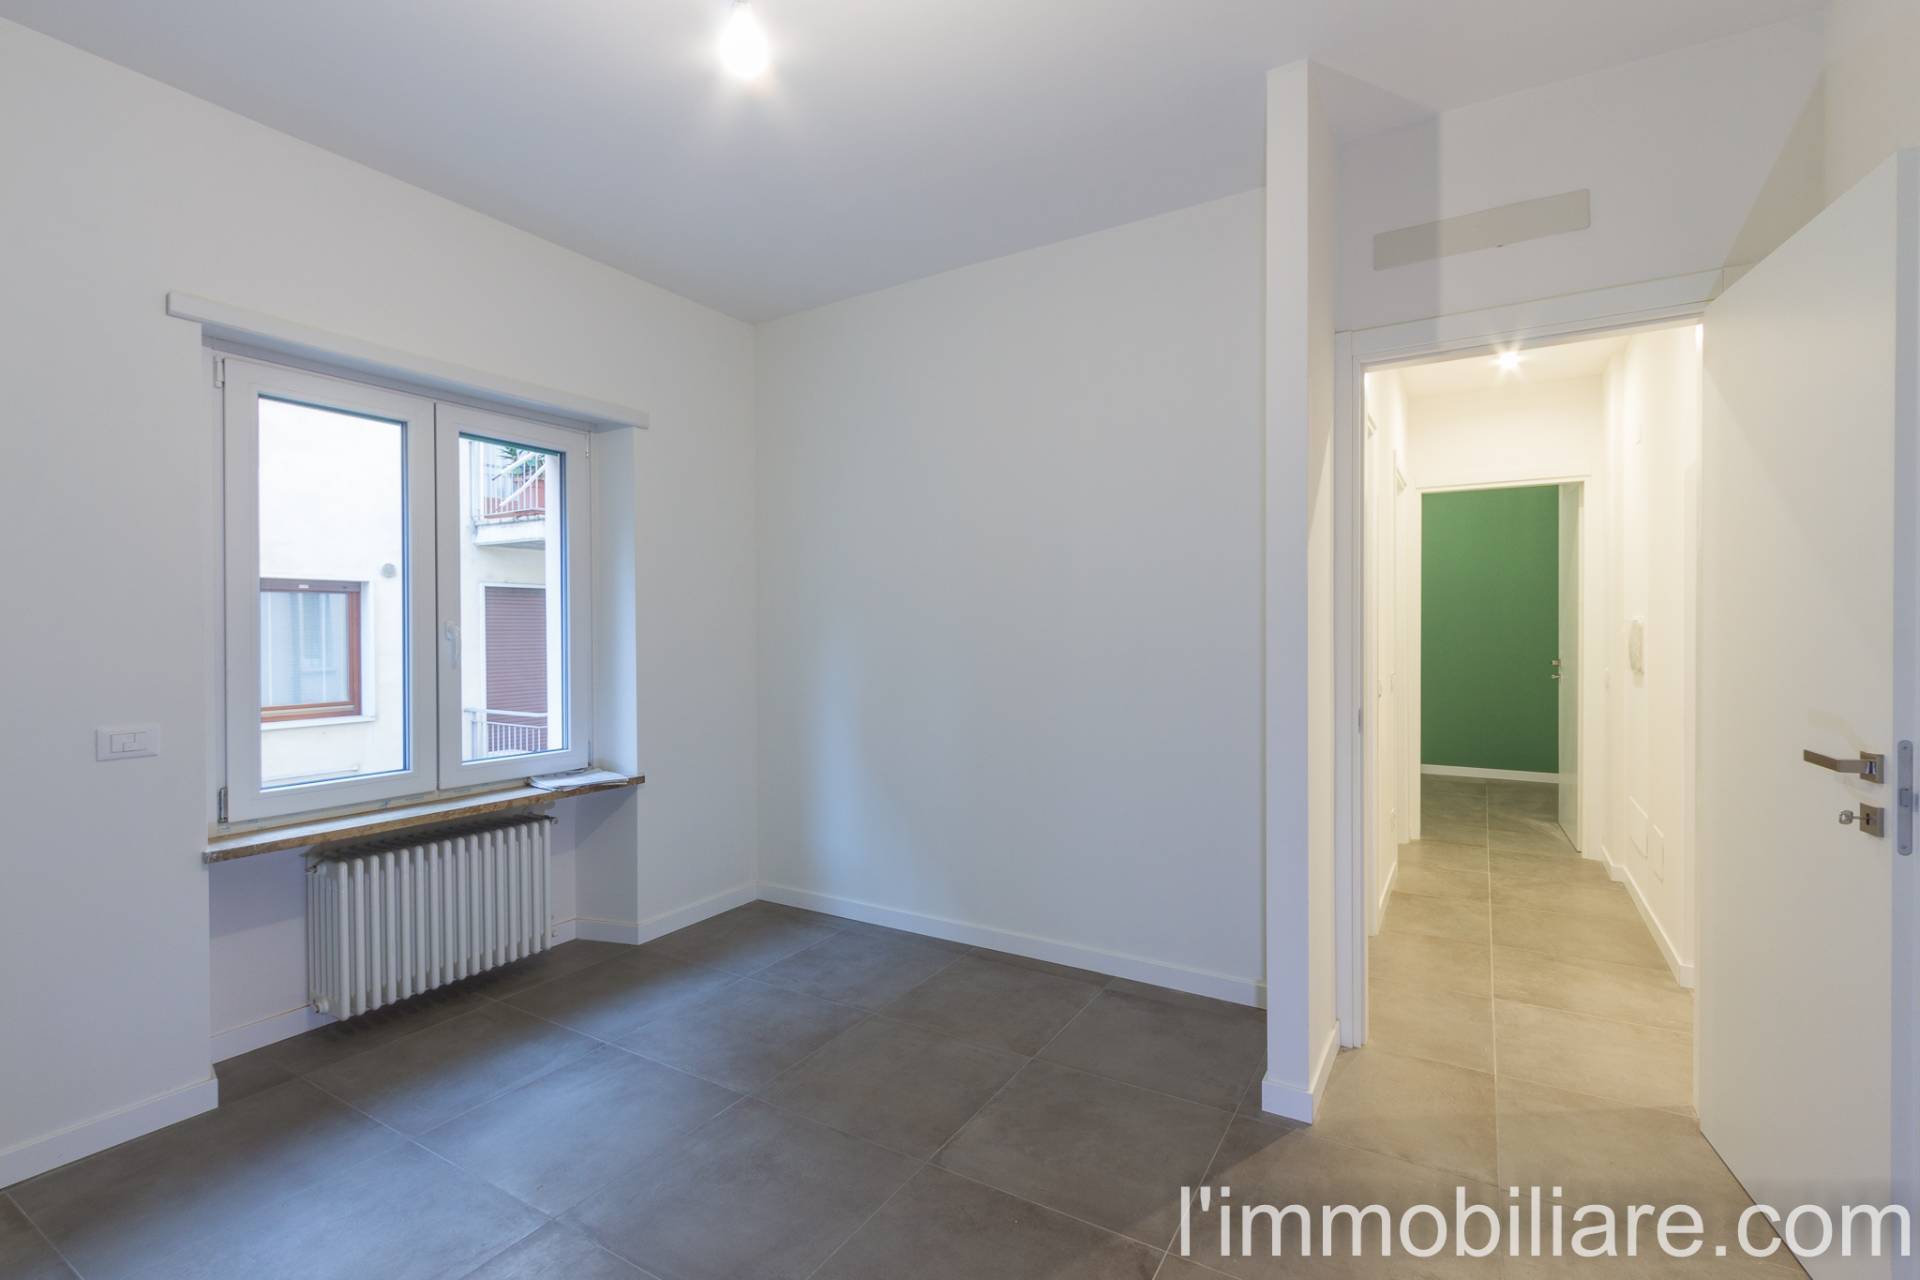 Appartamento in Vendita a Verona: 3 locali, 85 mq - Foto 9